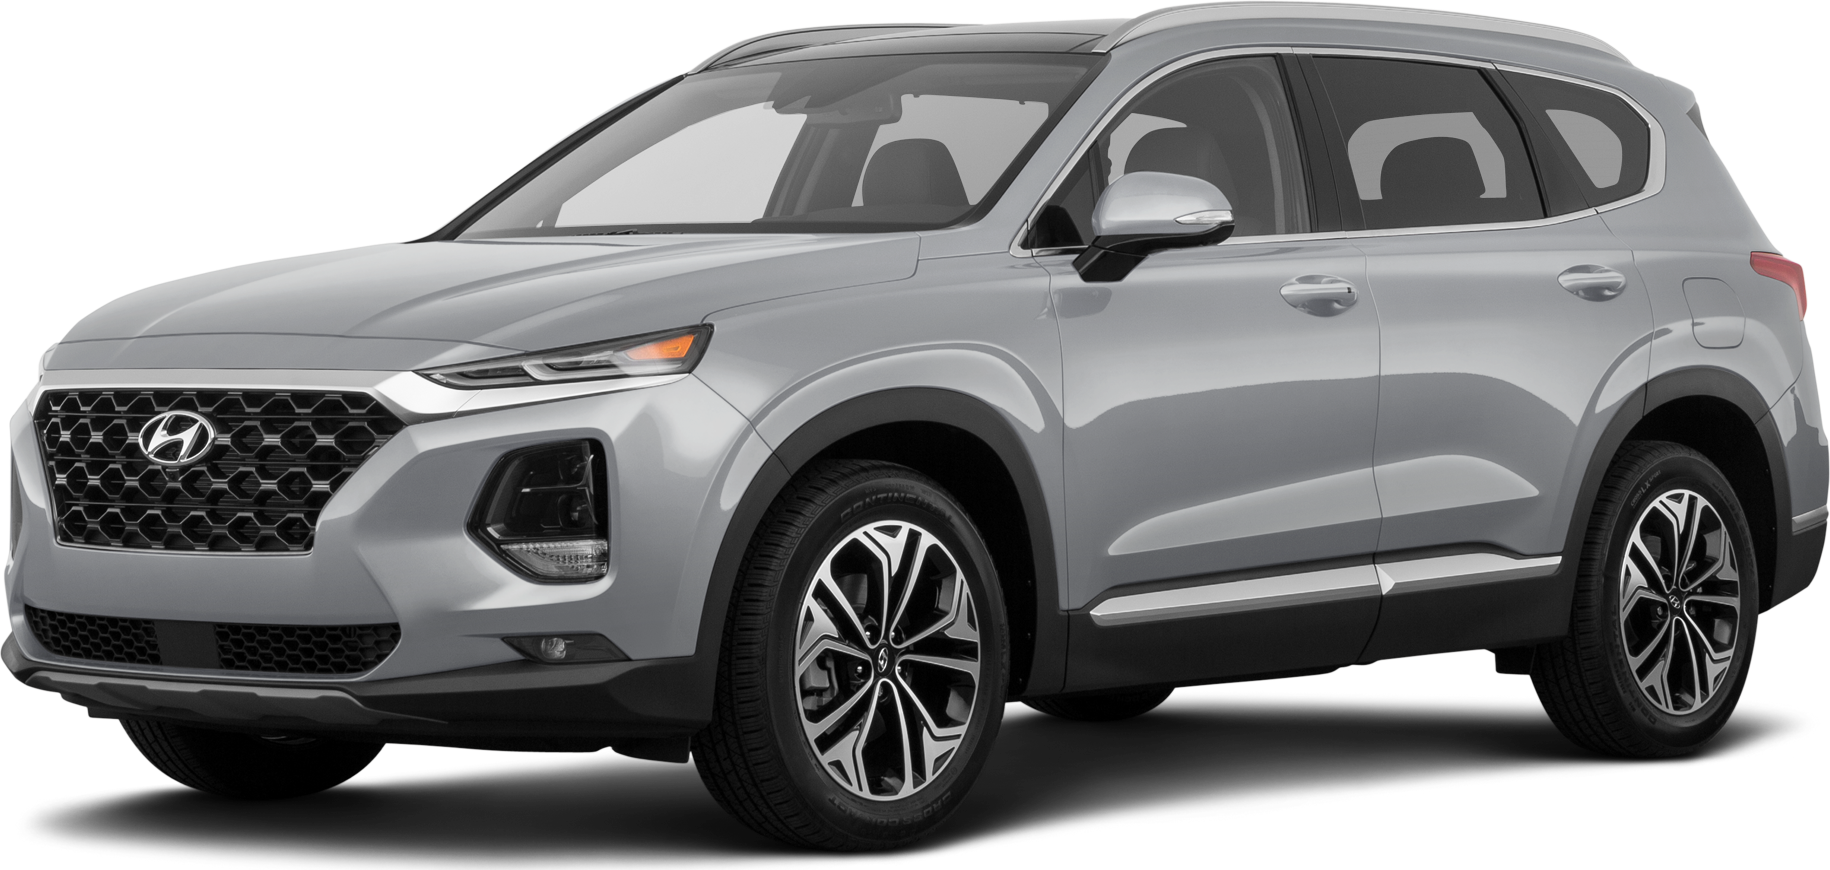 Review The 2019 Hyundai Santa Fe